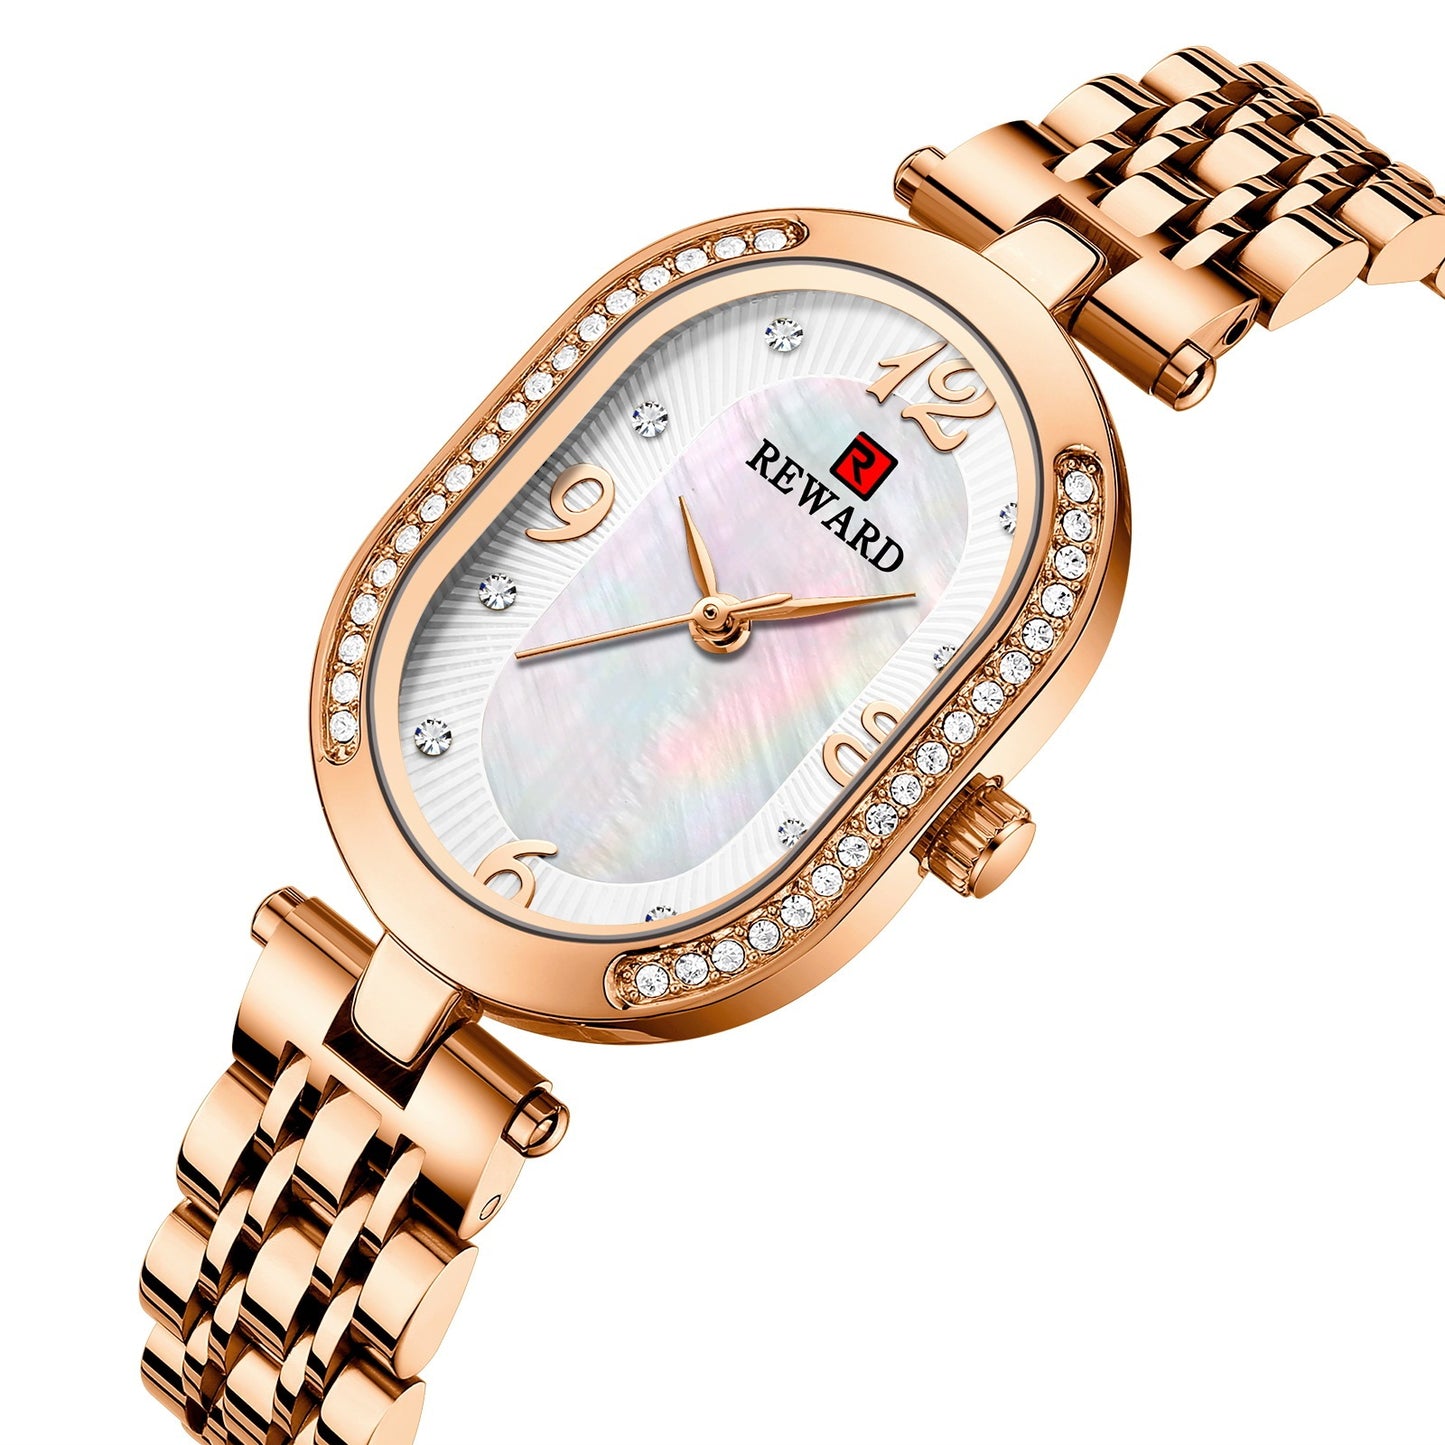 Elegant Lady Watch With Diamonds